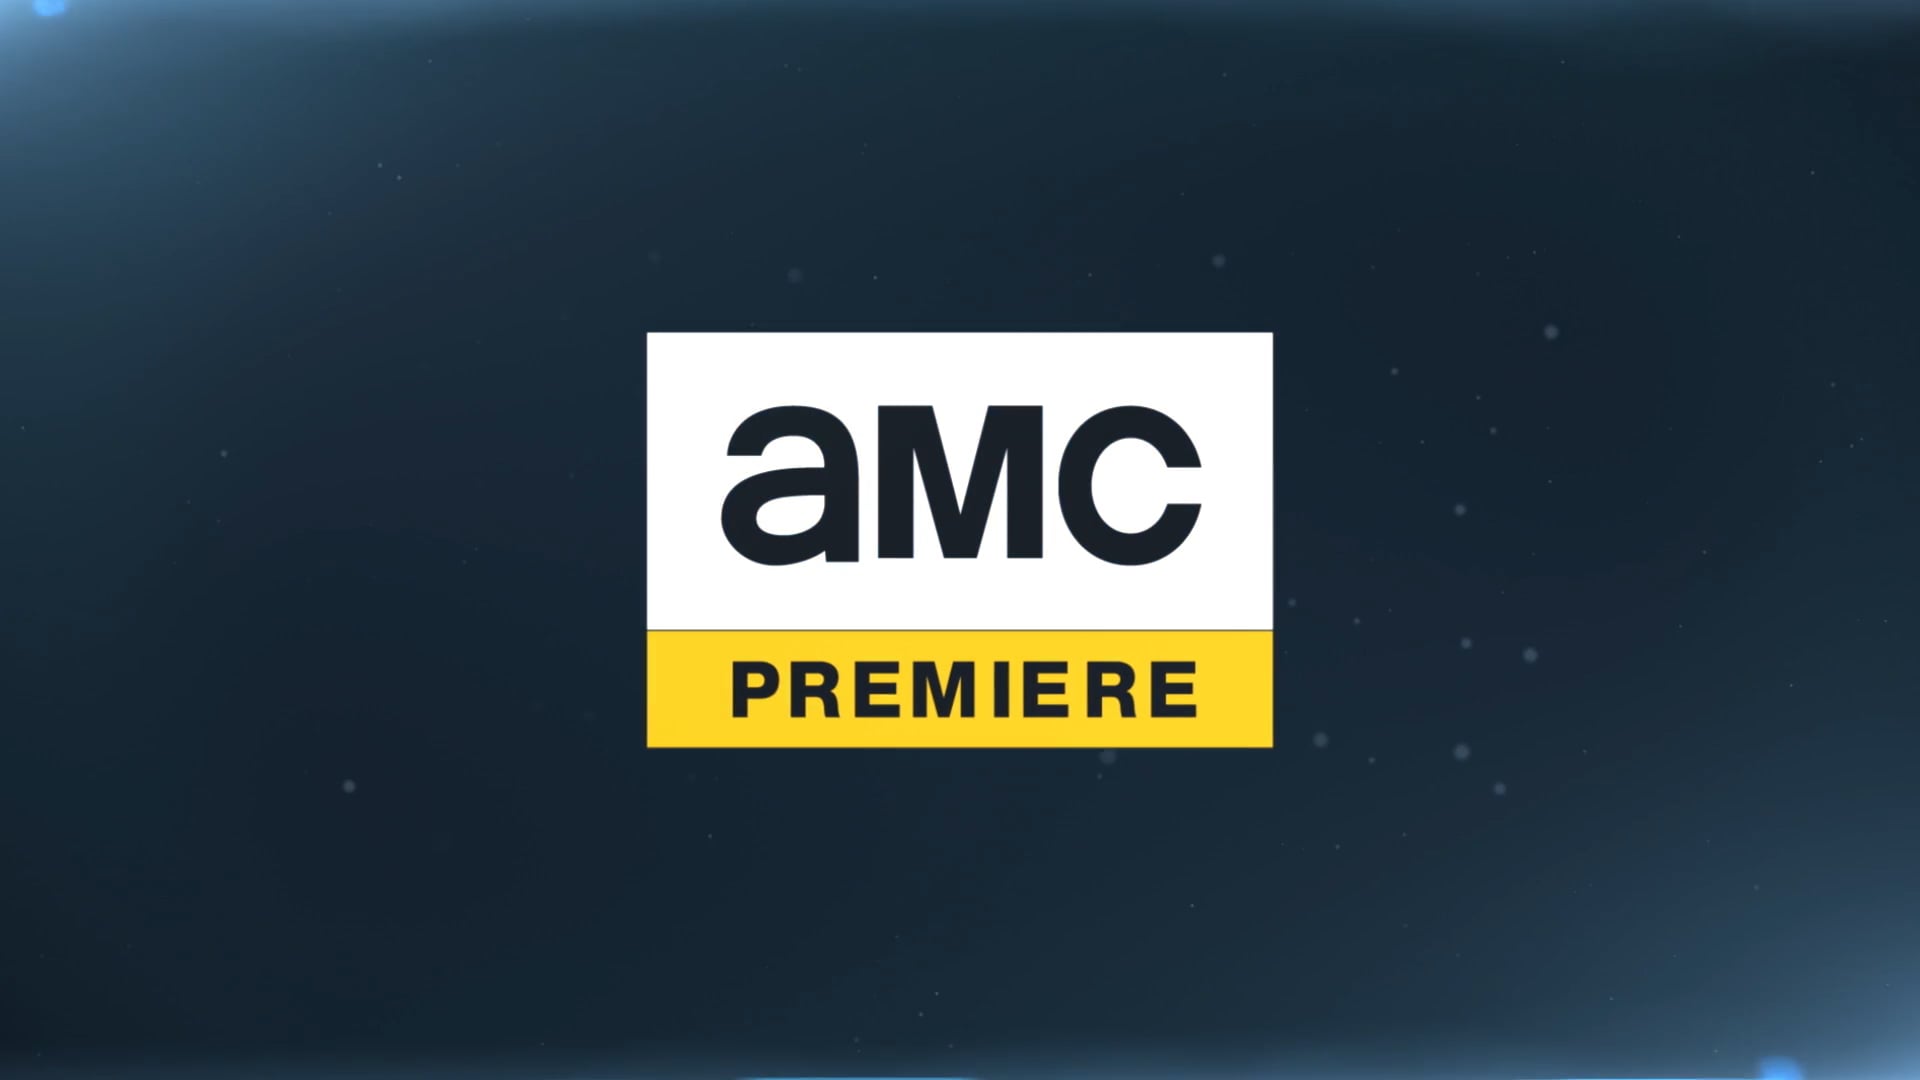 AMC Premiere Image Spot